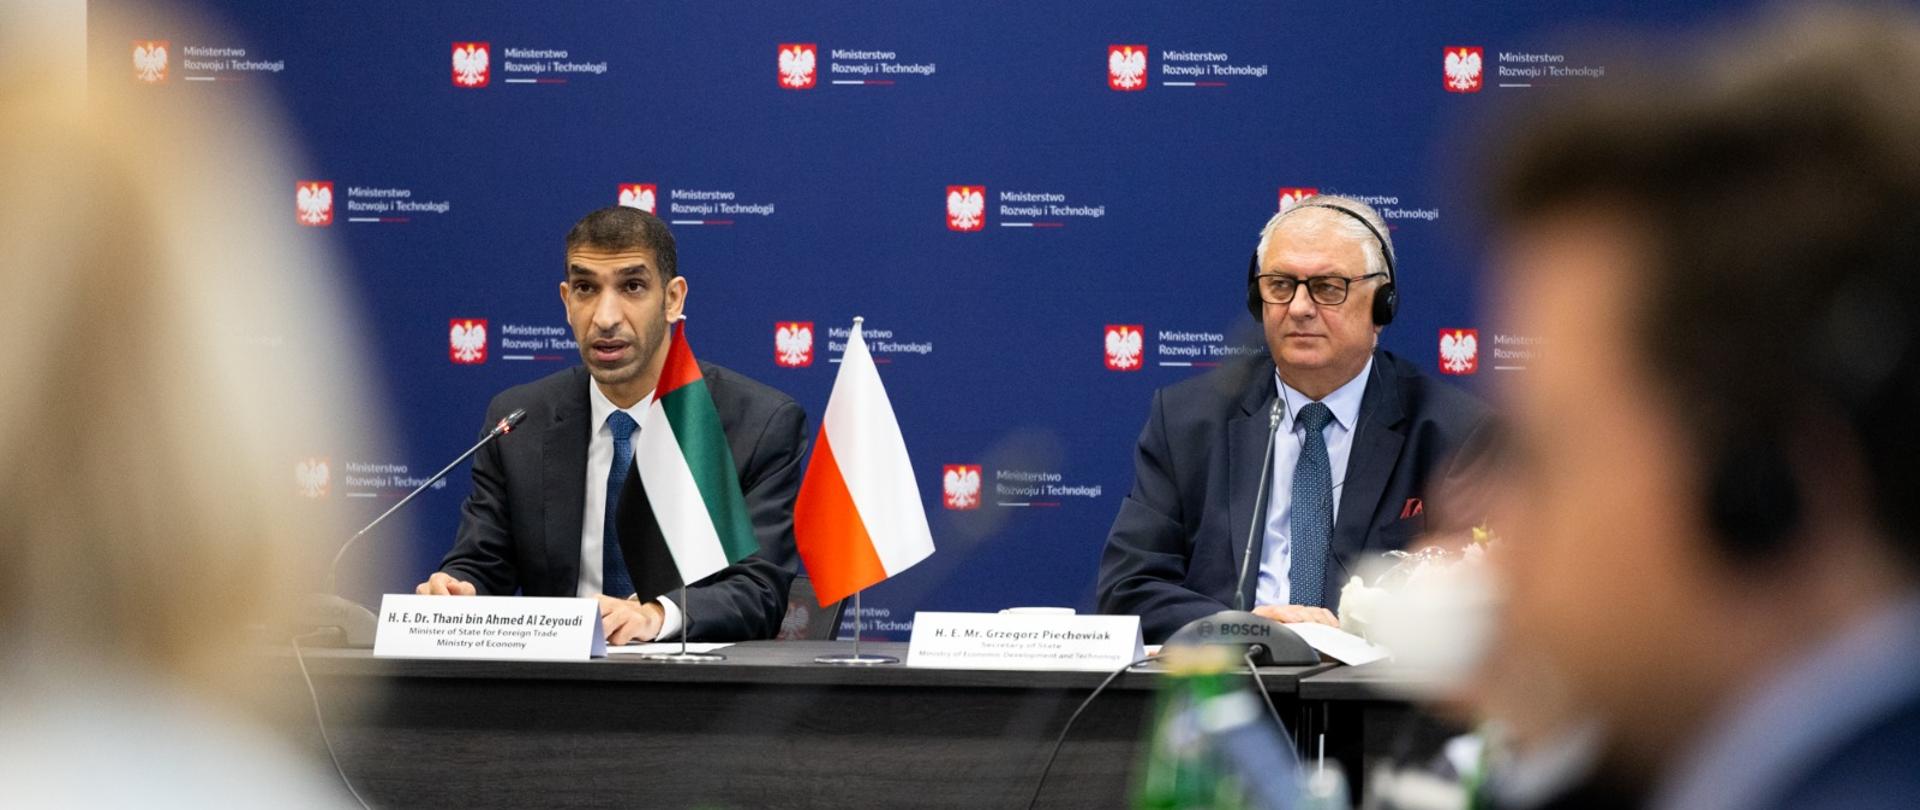 Polska i Zjednoczone Emiraty Arabskie zacieśniają współpracę gospodarczą